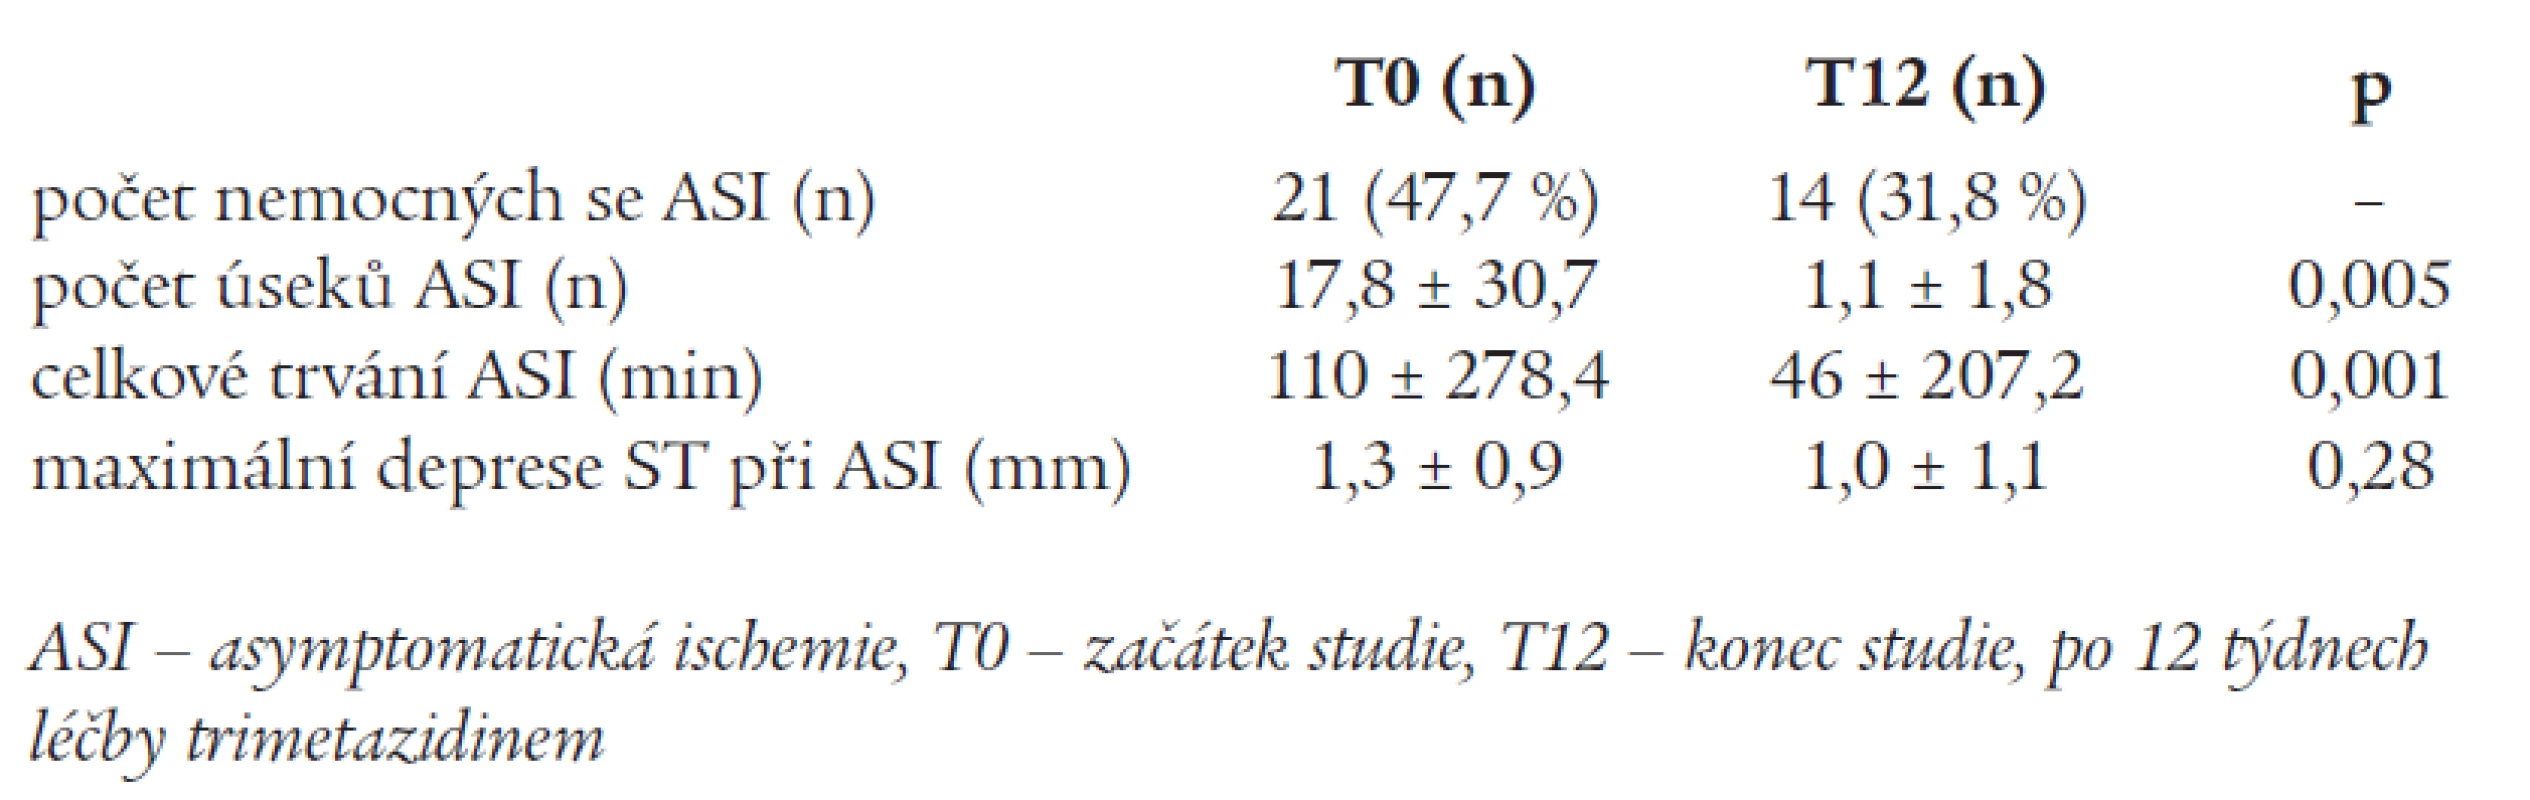 Změny výskytu asymptomatické ischemie u podstudie s 24hodinovým monitorováním EKG (n = 44)